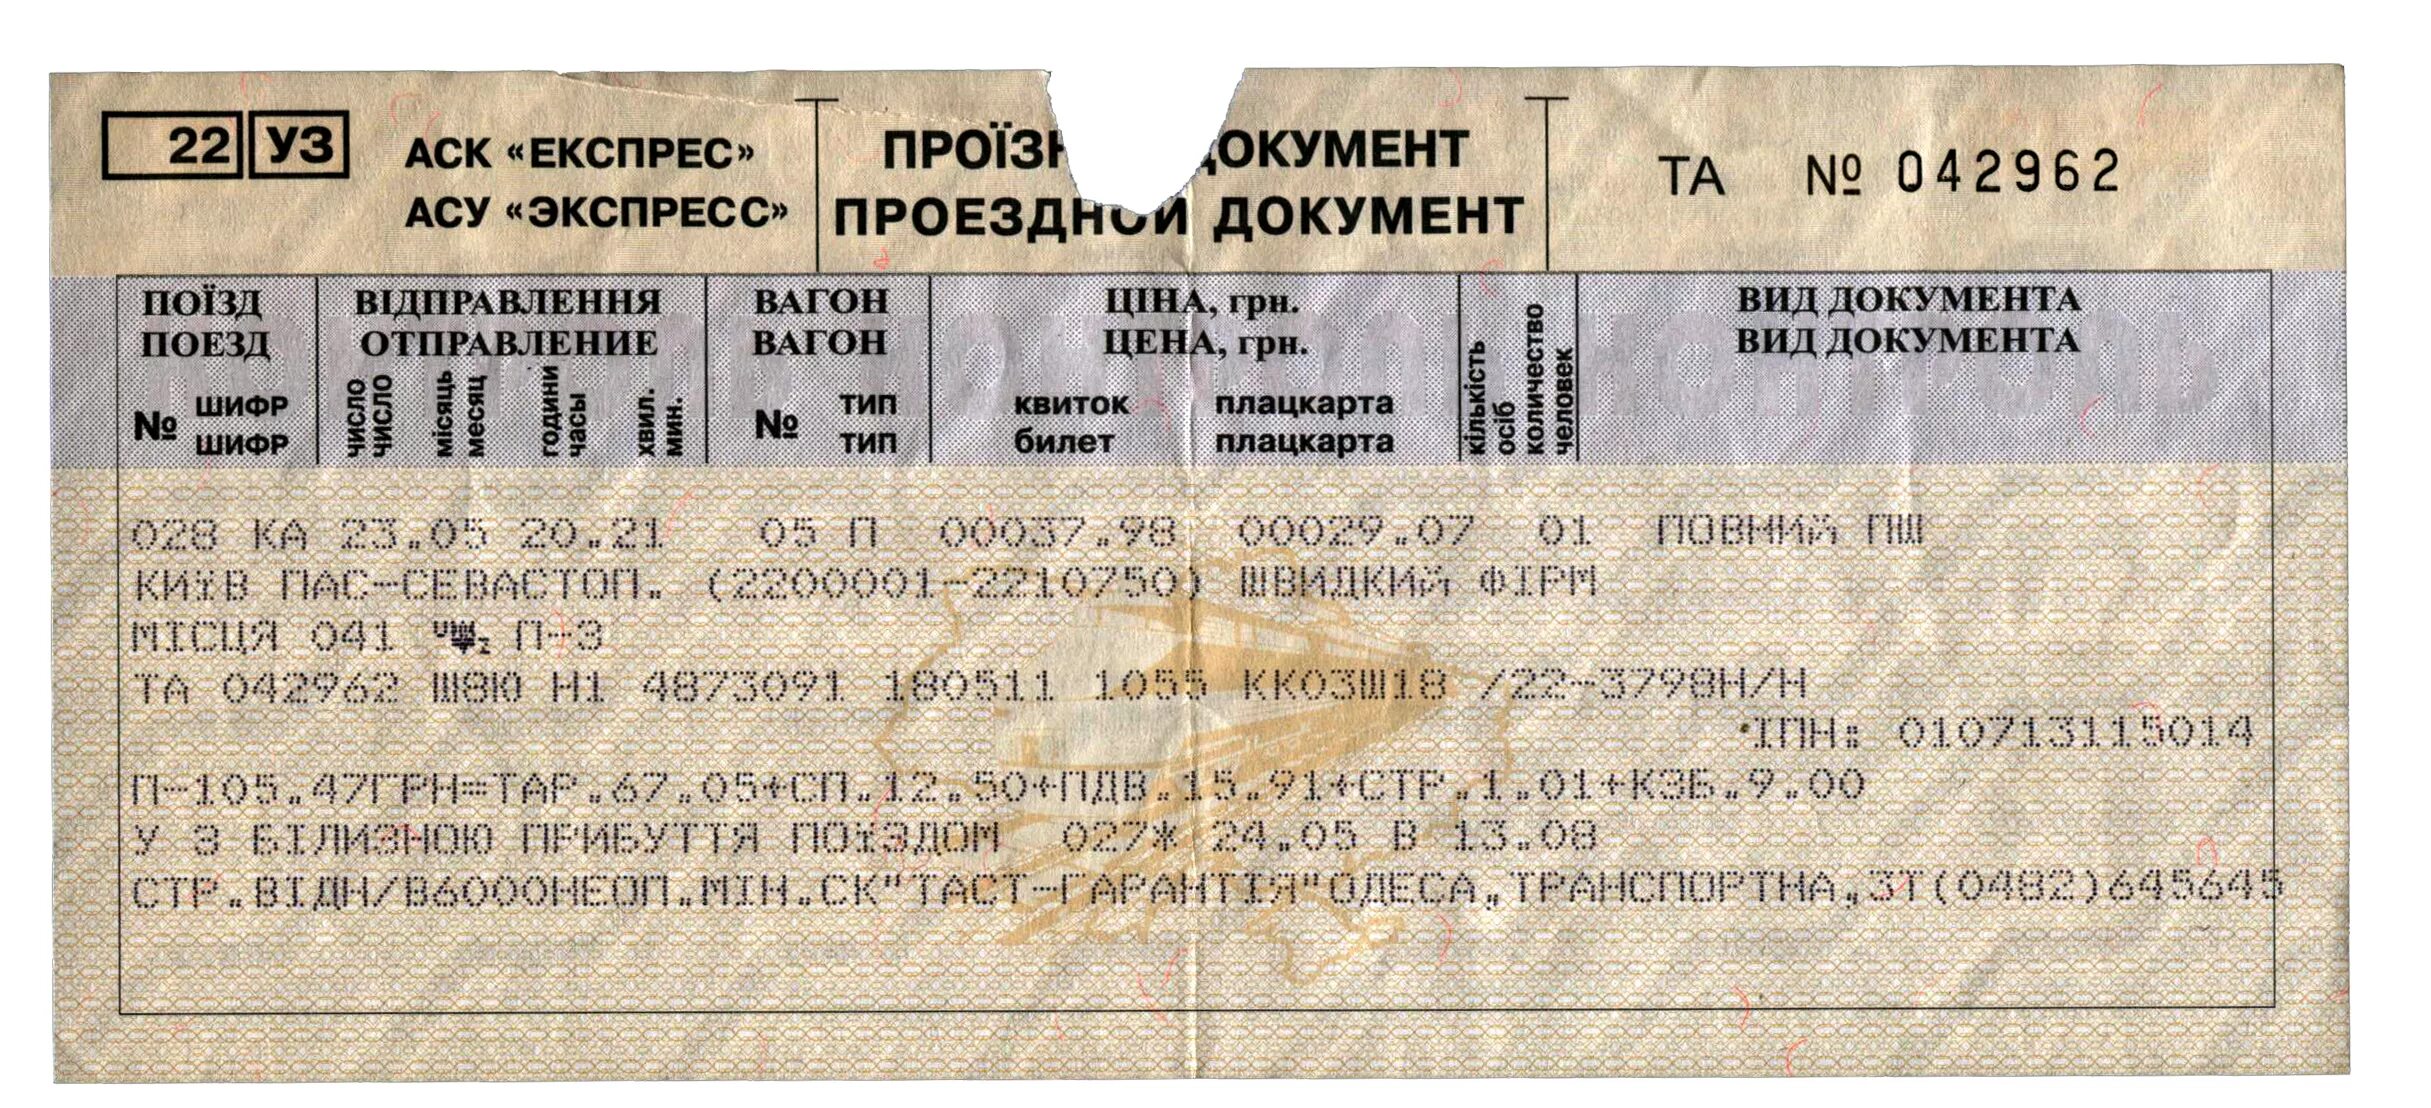 Билет на поезд. Билеты ЖД на поезд. Железнодорожный билет билет. Билеты на поезд РЖД.